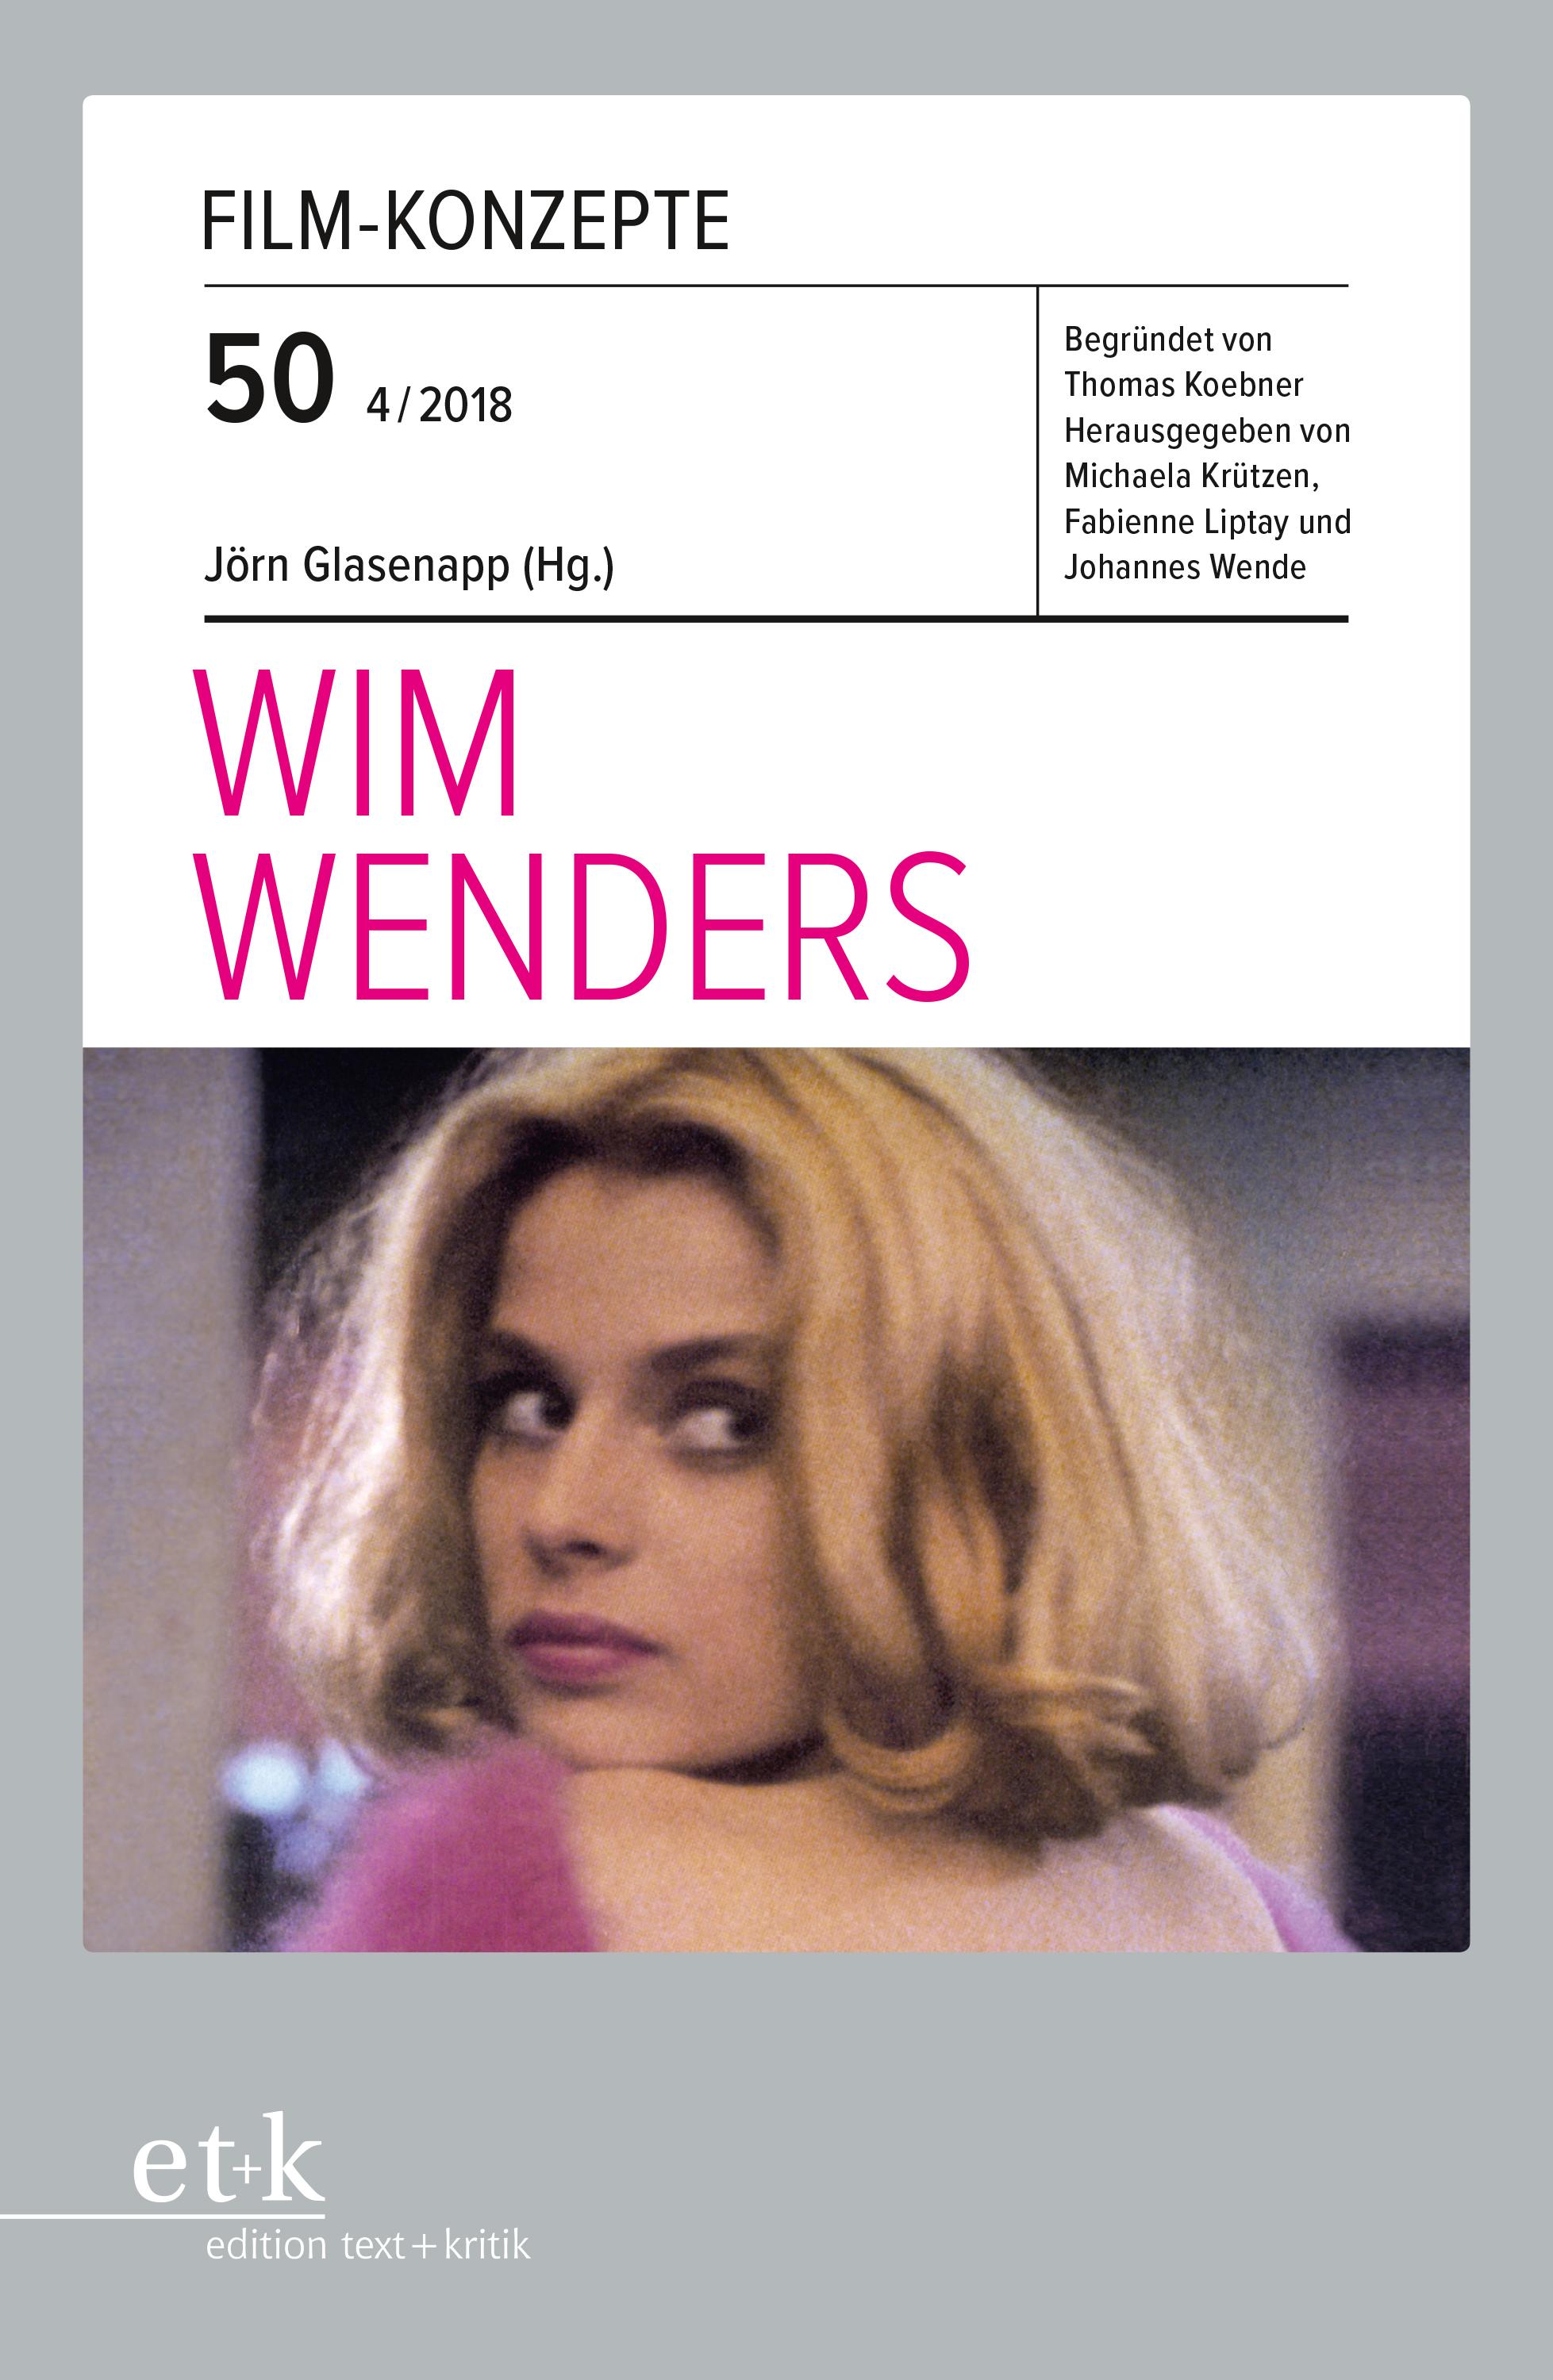 Wim Wenders / Taschenbuch / Film-Konzepte / 126 S. / Deutsch / 2018 / Edition Text + Kritik / EAN 9783869166551